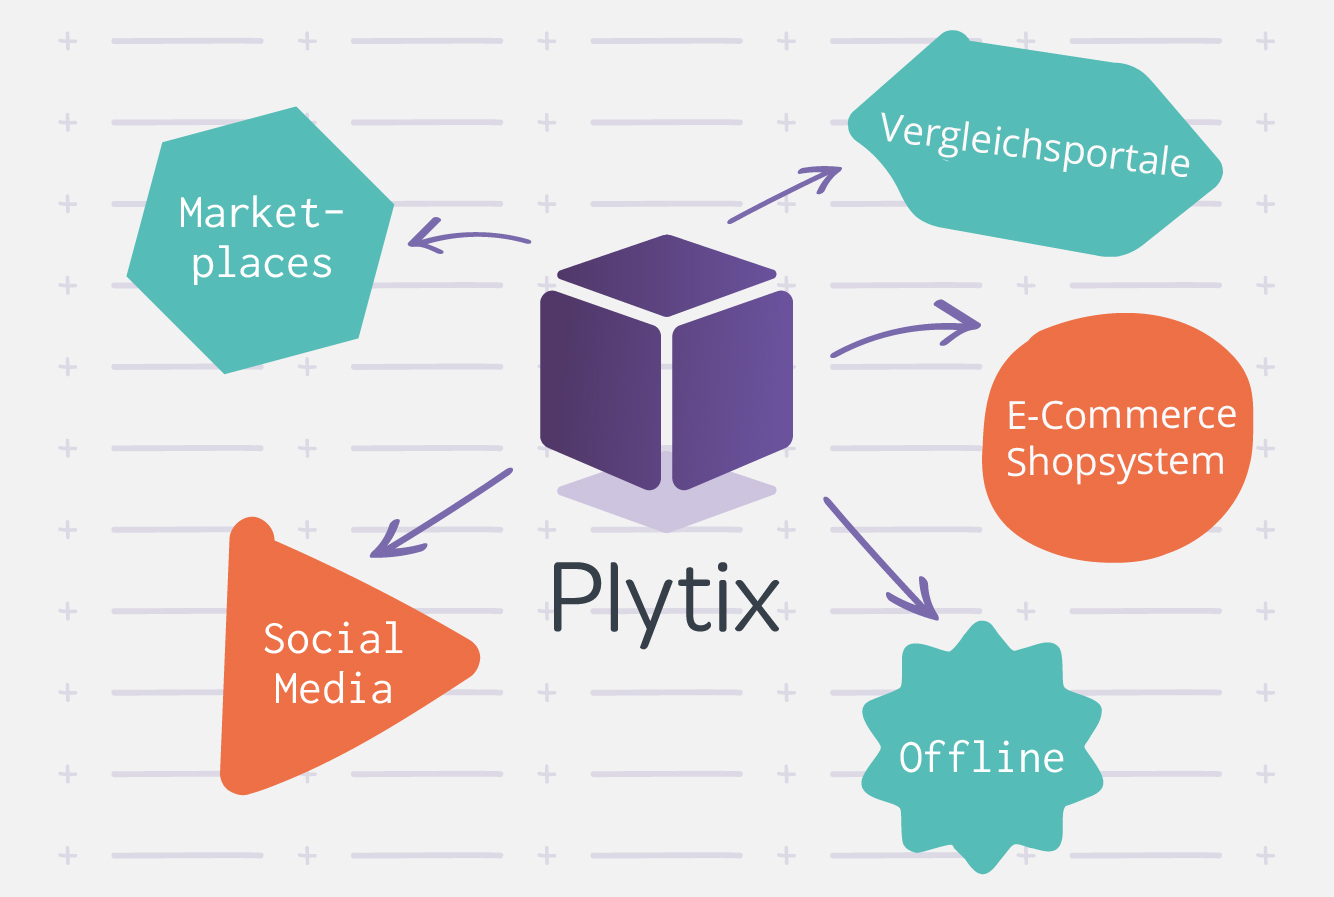 Plytix: Deine Ecommerce Plattform Um Deine Produkte Auf All Deine Kanäle Zu Bringen